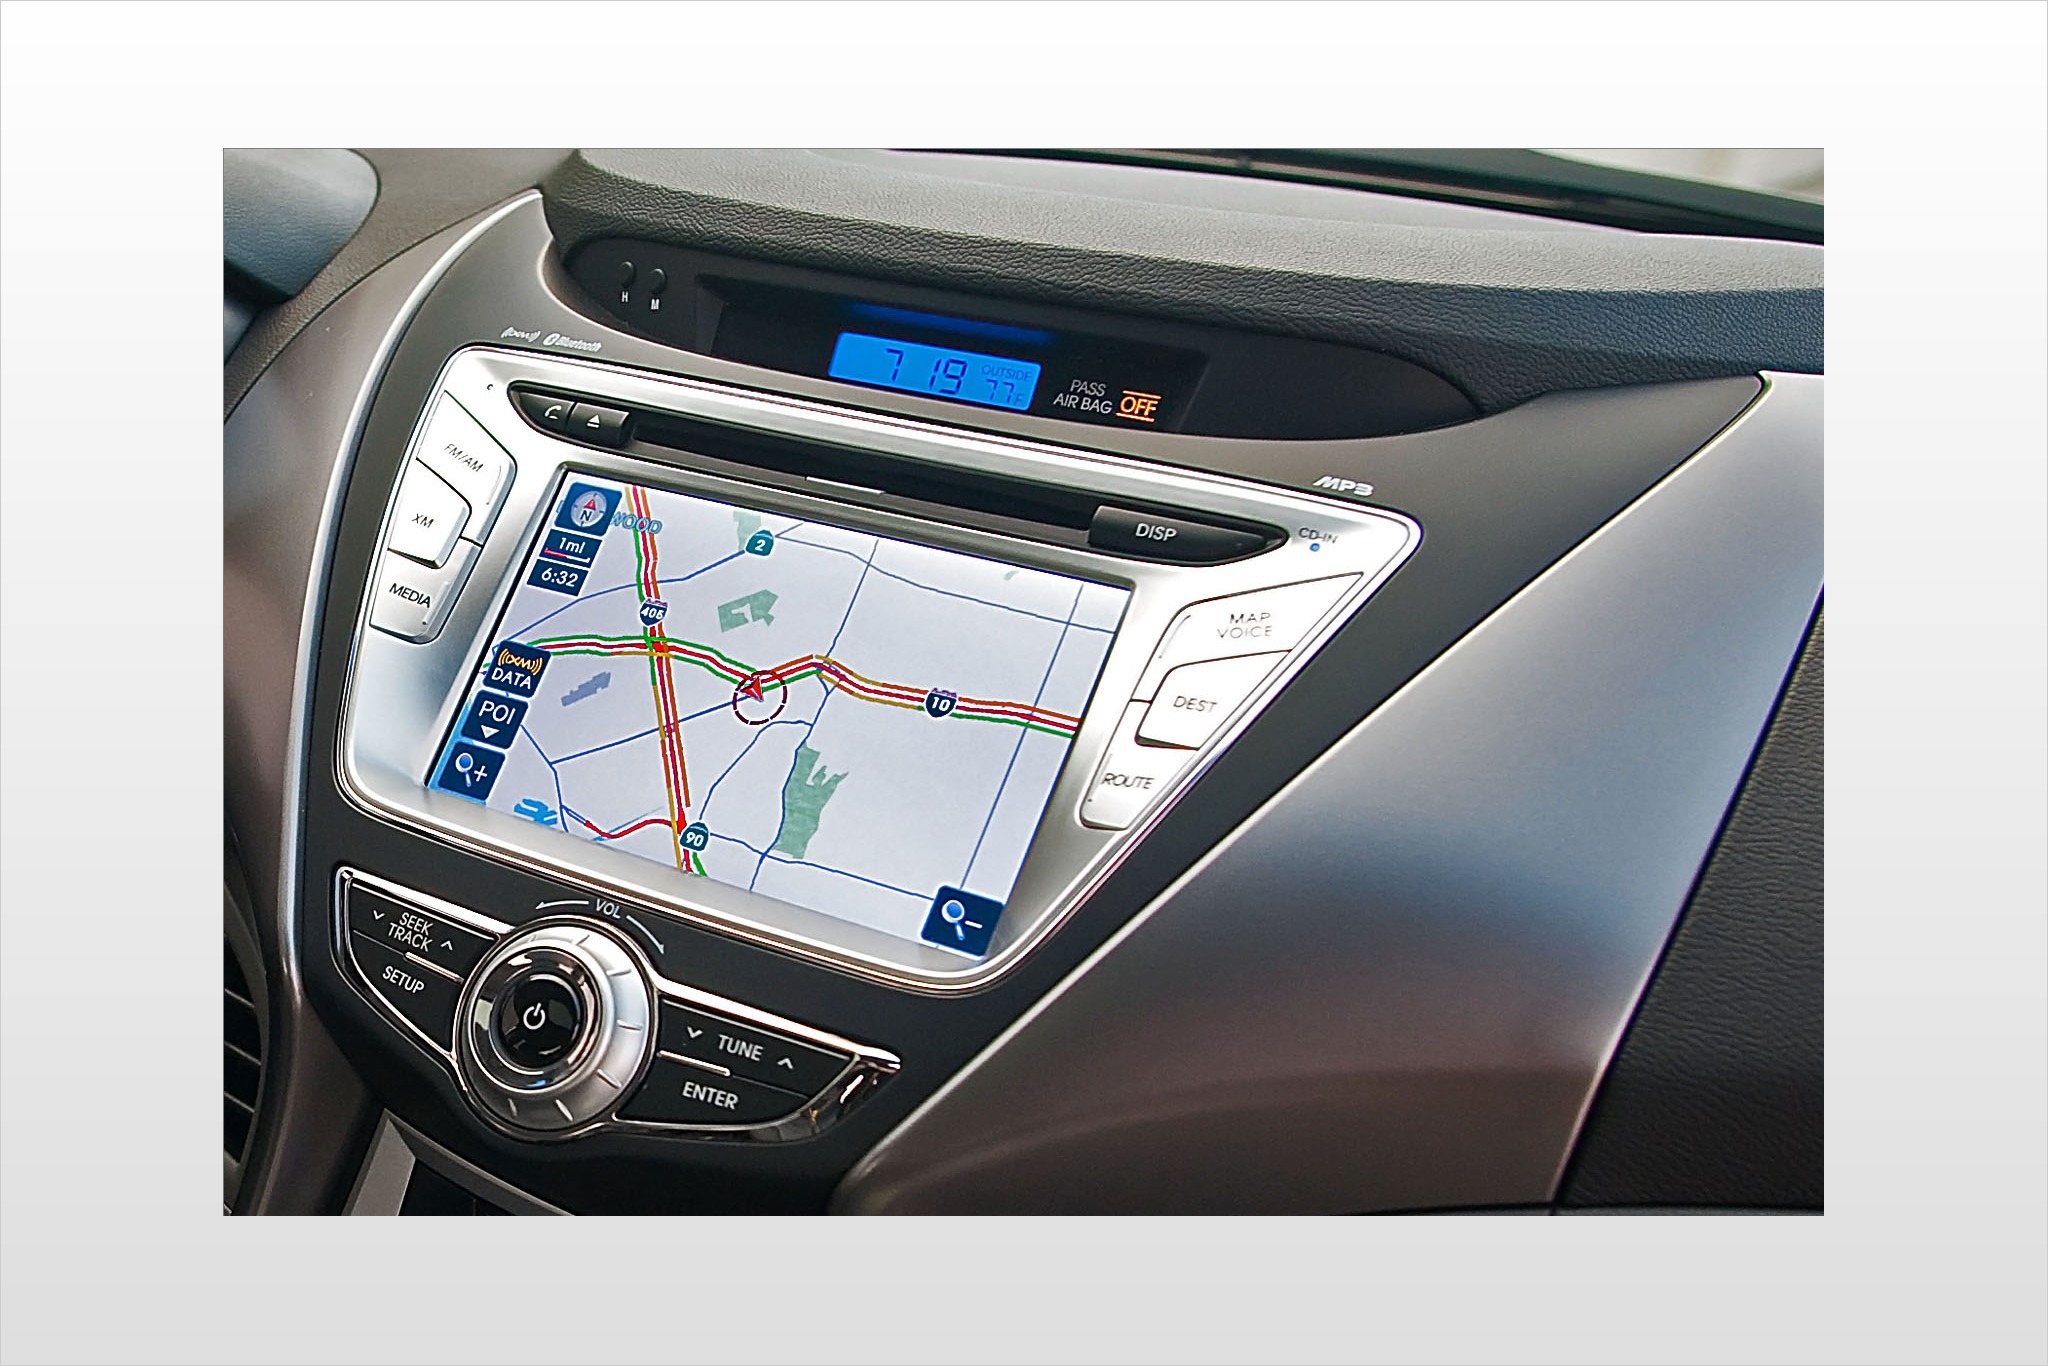 2012 Hyundai Elantra Limited Sedan Navigation System